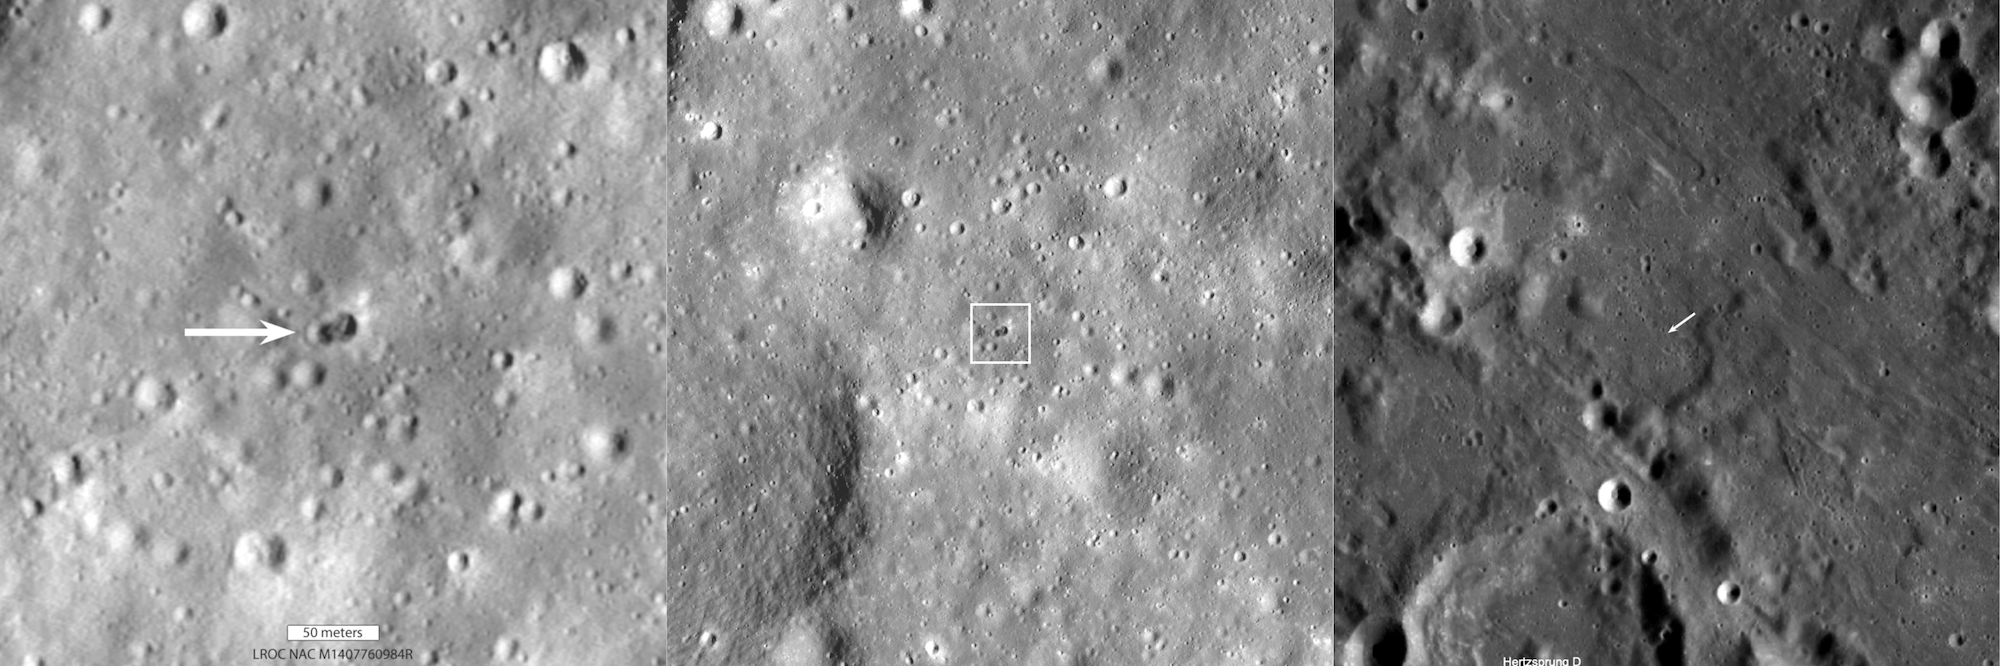 La foto dei due crateri scattata dal LRO della NASA. A sinistra uno zoom, la foto ha una larghezza di circa 370 metri. La foto al centro è invece un ingrandimento con una larghezza di 1,1 km. Quella a destra è la foto originale del LRO, con una larghezza di 110 km. Credits: NASA/Goddard/Arizona State University